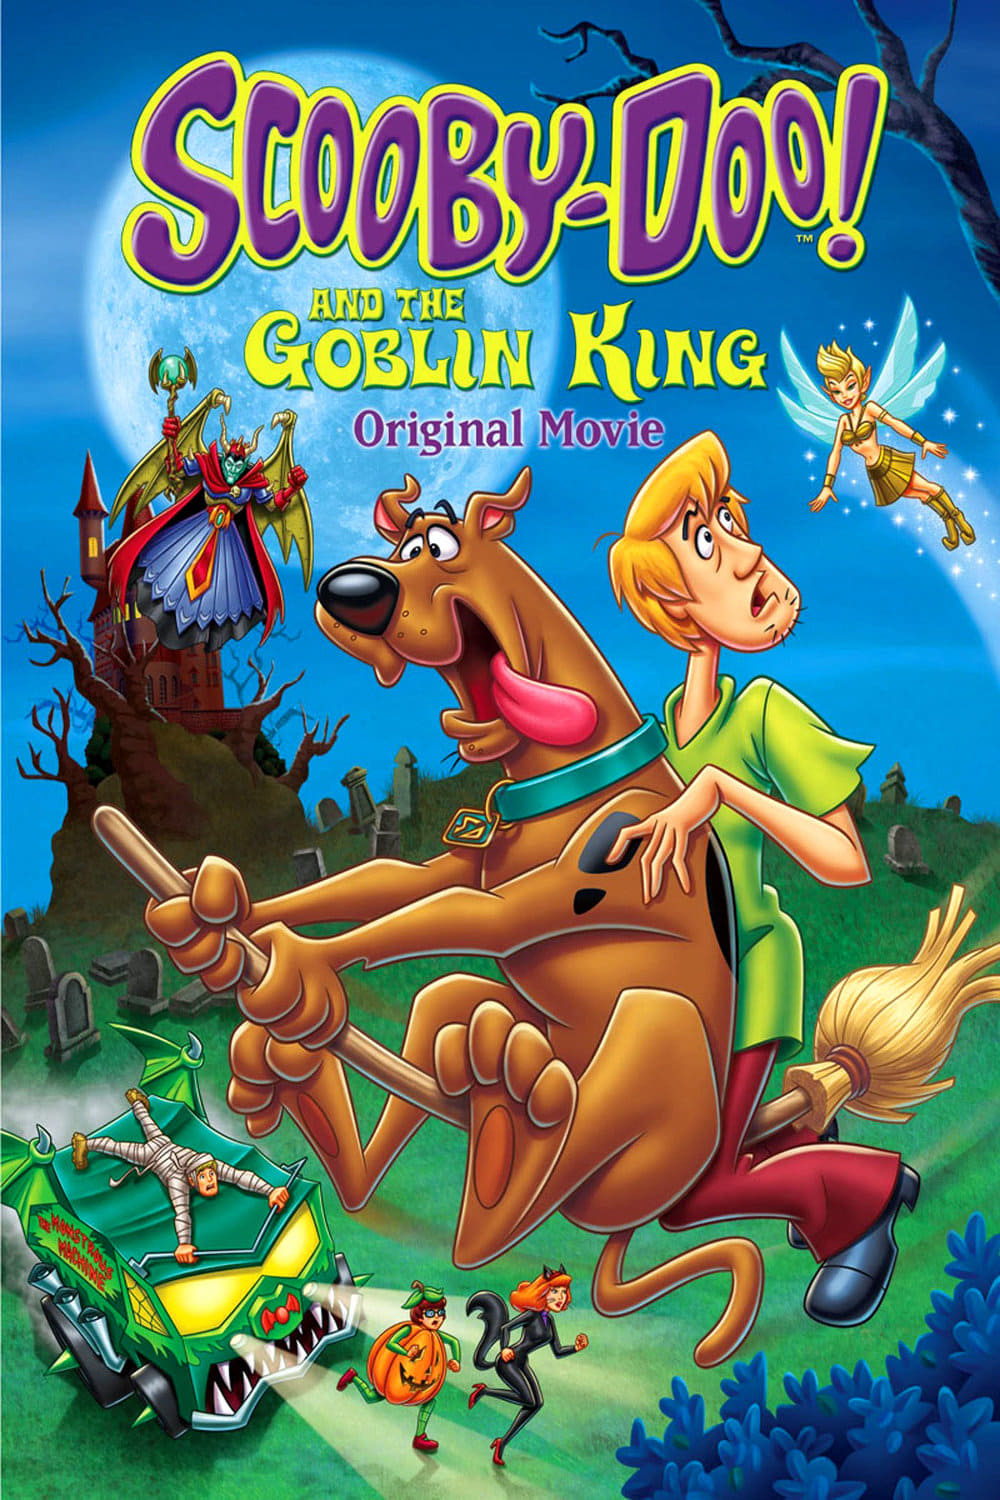 ดูหนังออนไลน์ฟรี Scooby-Doo and the Goblin King (2008) สกุ๊ปบี้ดู ตอน ราชาแห่งภูติ หนังเต็มเรื่อง หนังมาสเตอร์ ดูหนังHD ดูหนังออนไลน์ ดูหนังใหม่